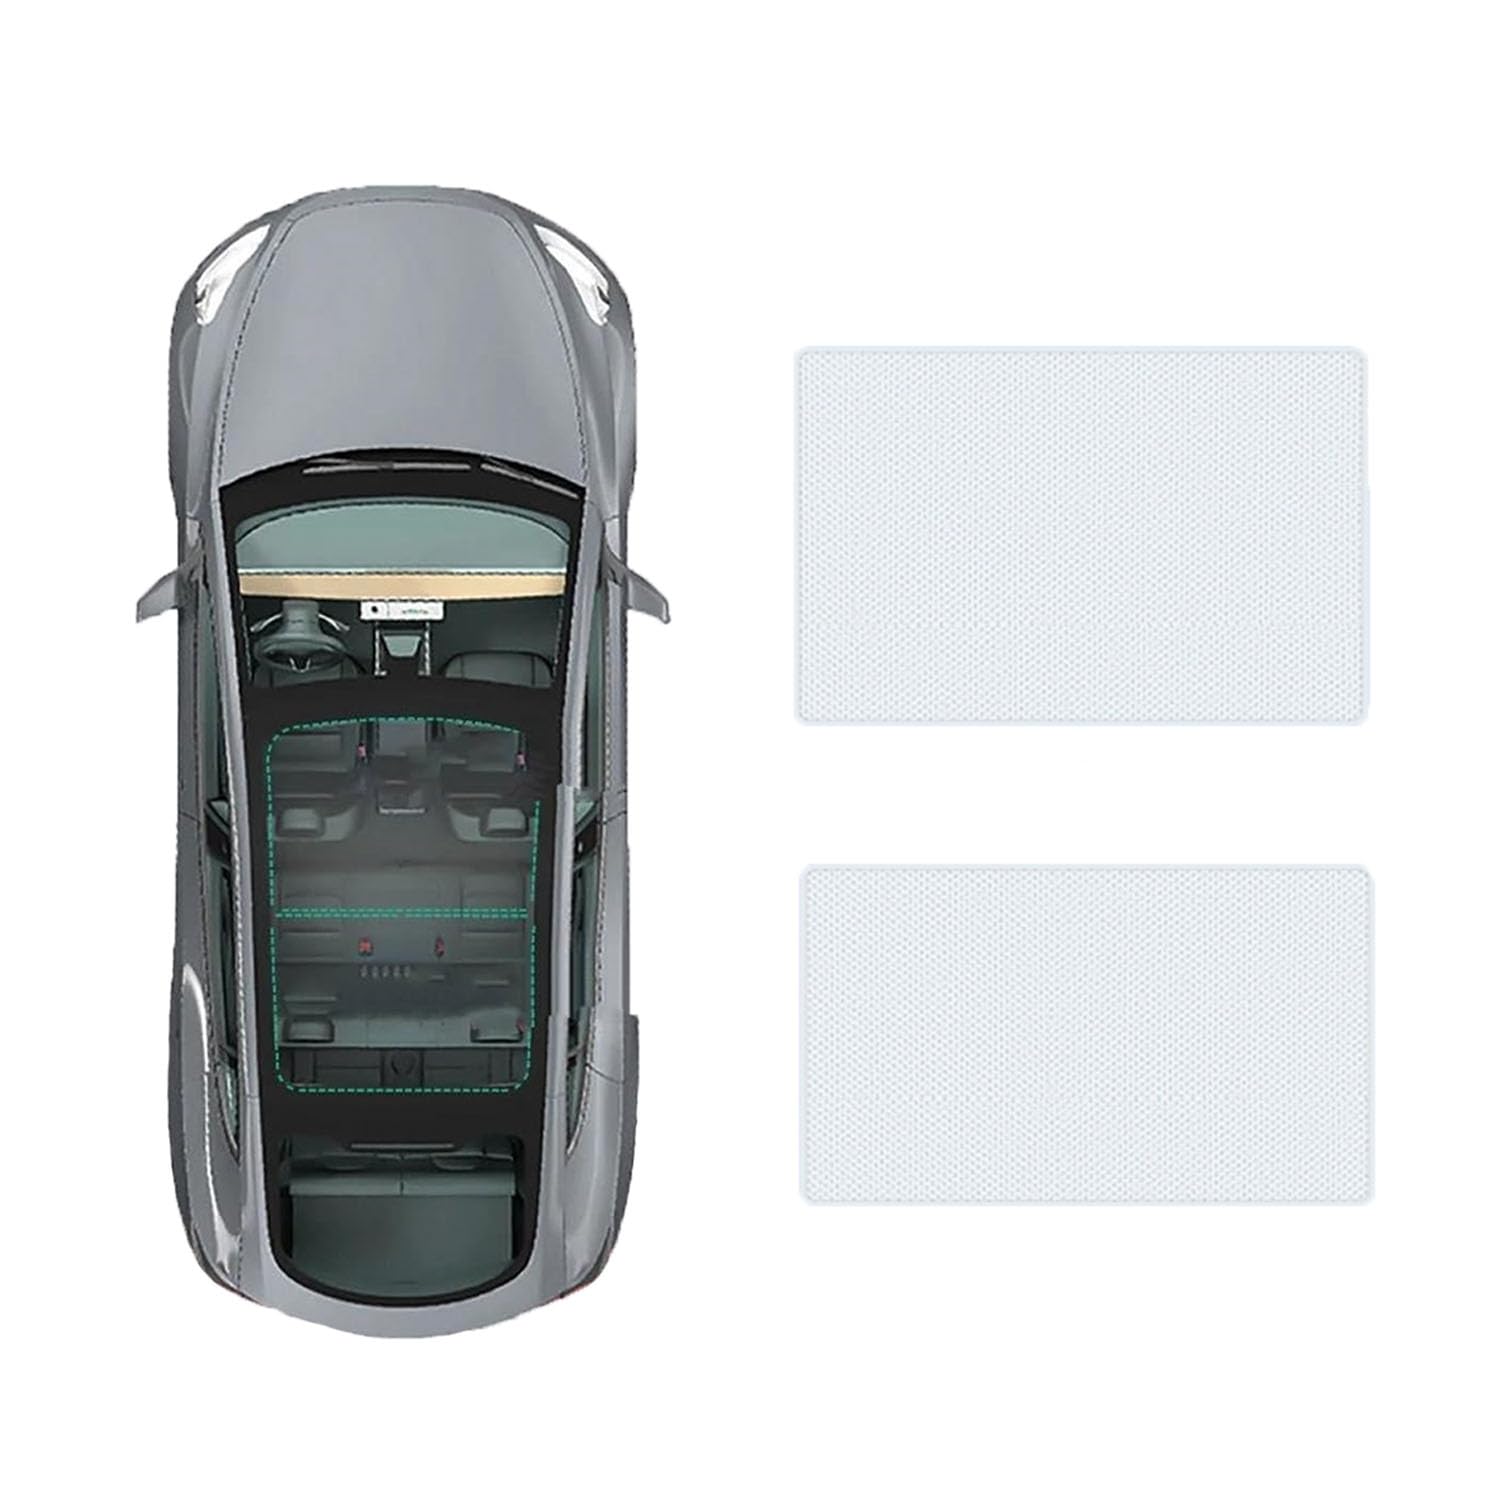 Auto-Schiebedach-Beschattung Für Mercedes Benz E-Class 2017-2023,Auto Schiebedach Sonnenschutz Dachfenster Dach Wärme Isolierung Beschattung Innen,A-Gray white regular Style von LiuROSE